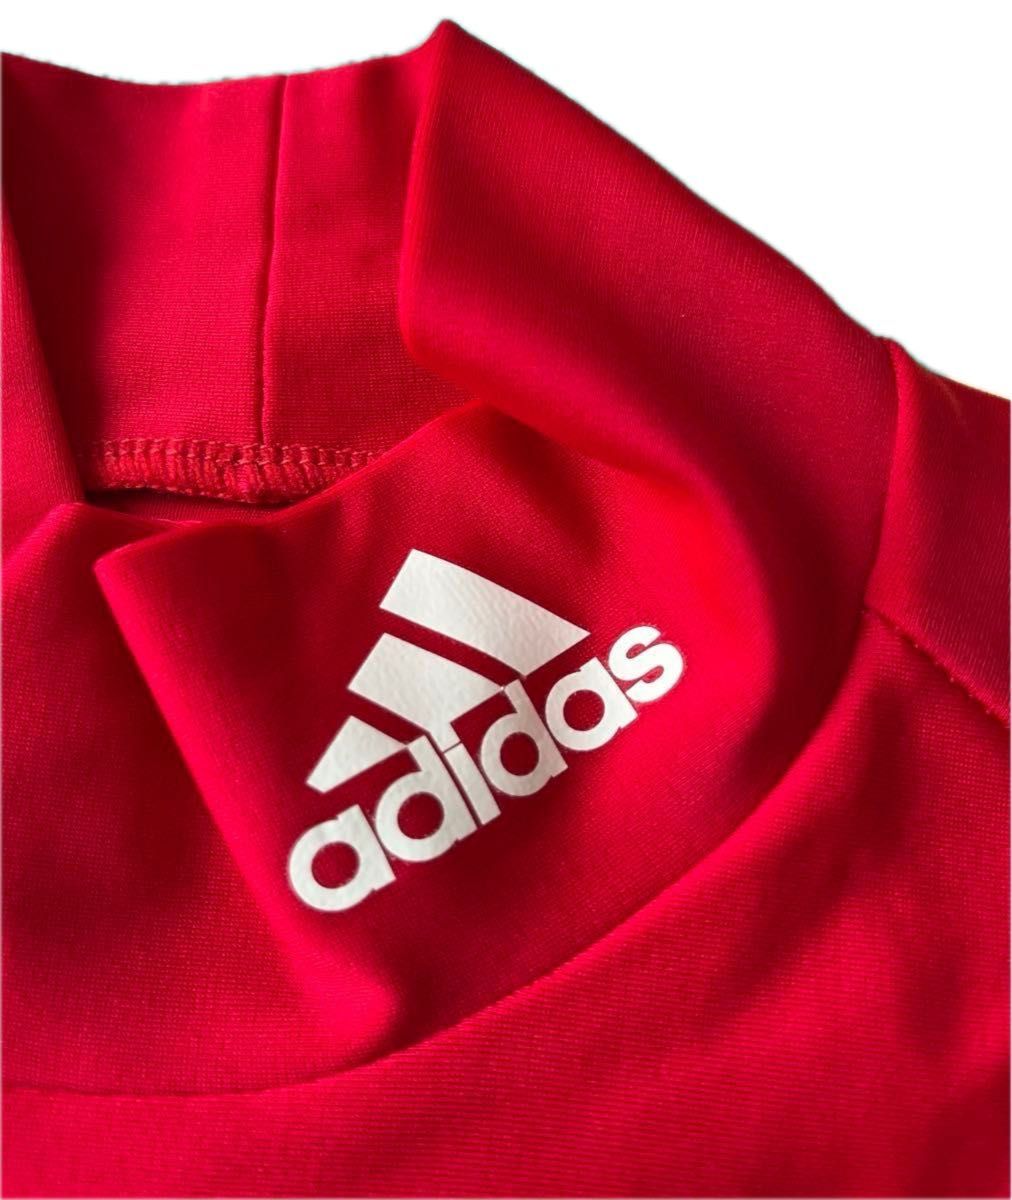 アディダス adidas インナー コンプレッション 長袖 赤色 防寒 Sサイズ ハイネック テックフィット